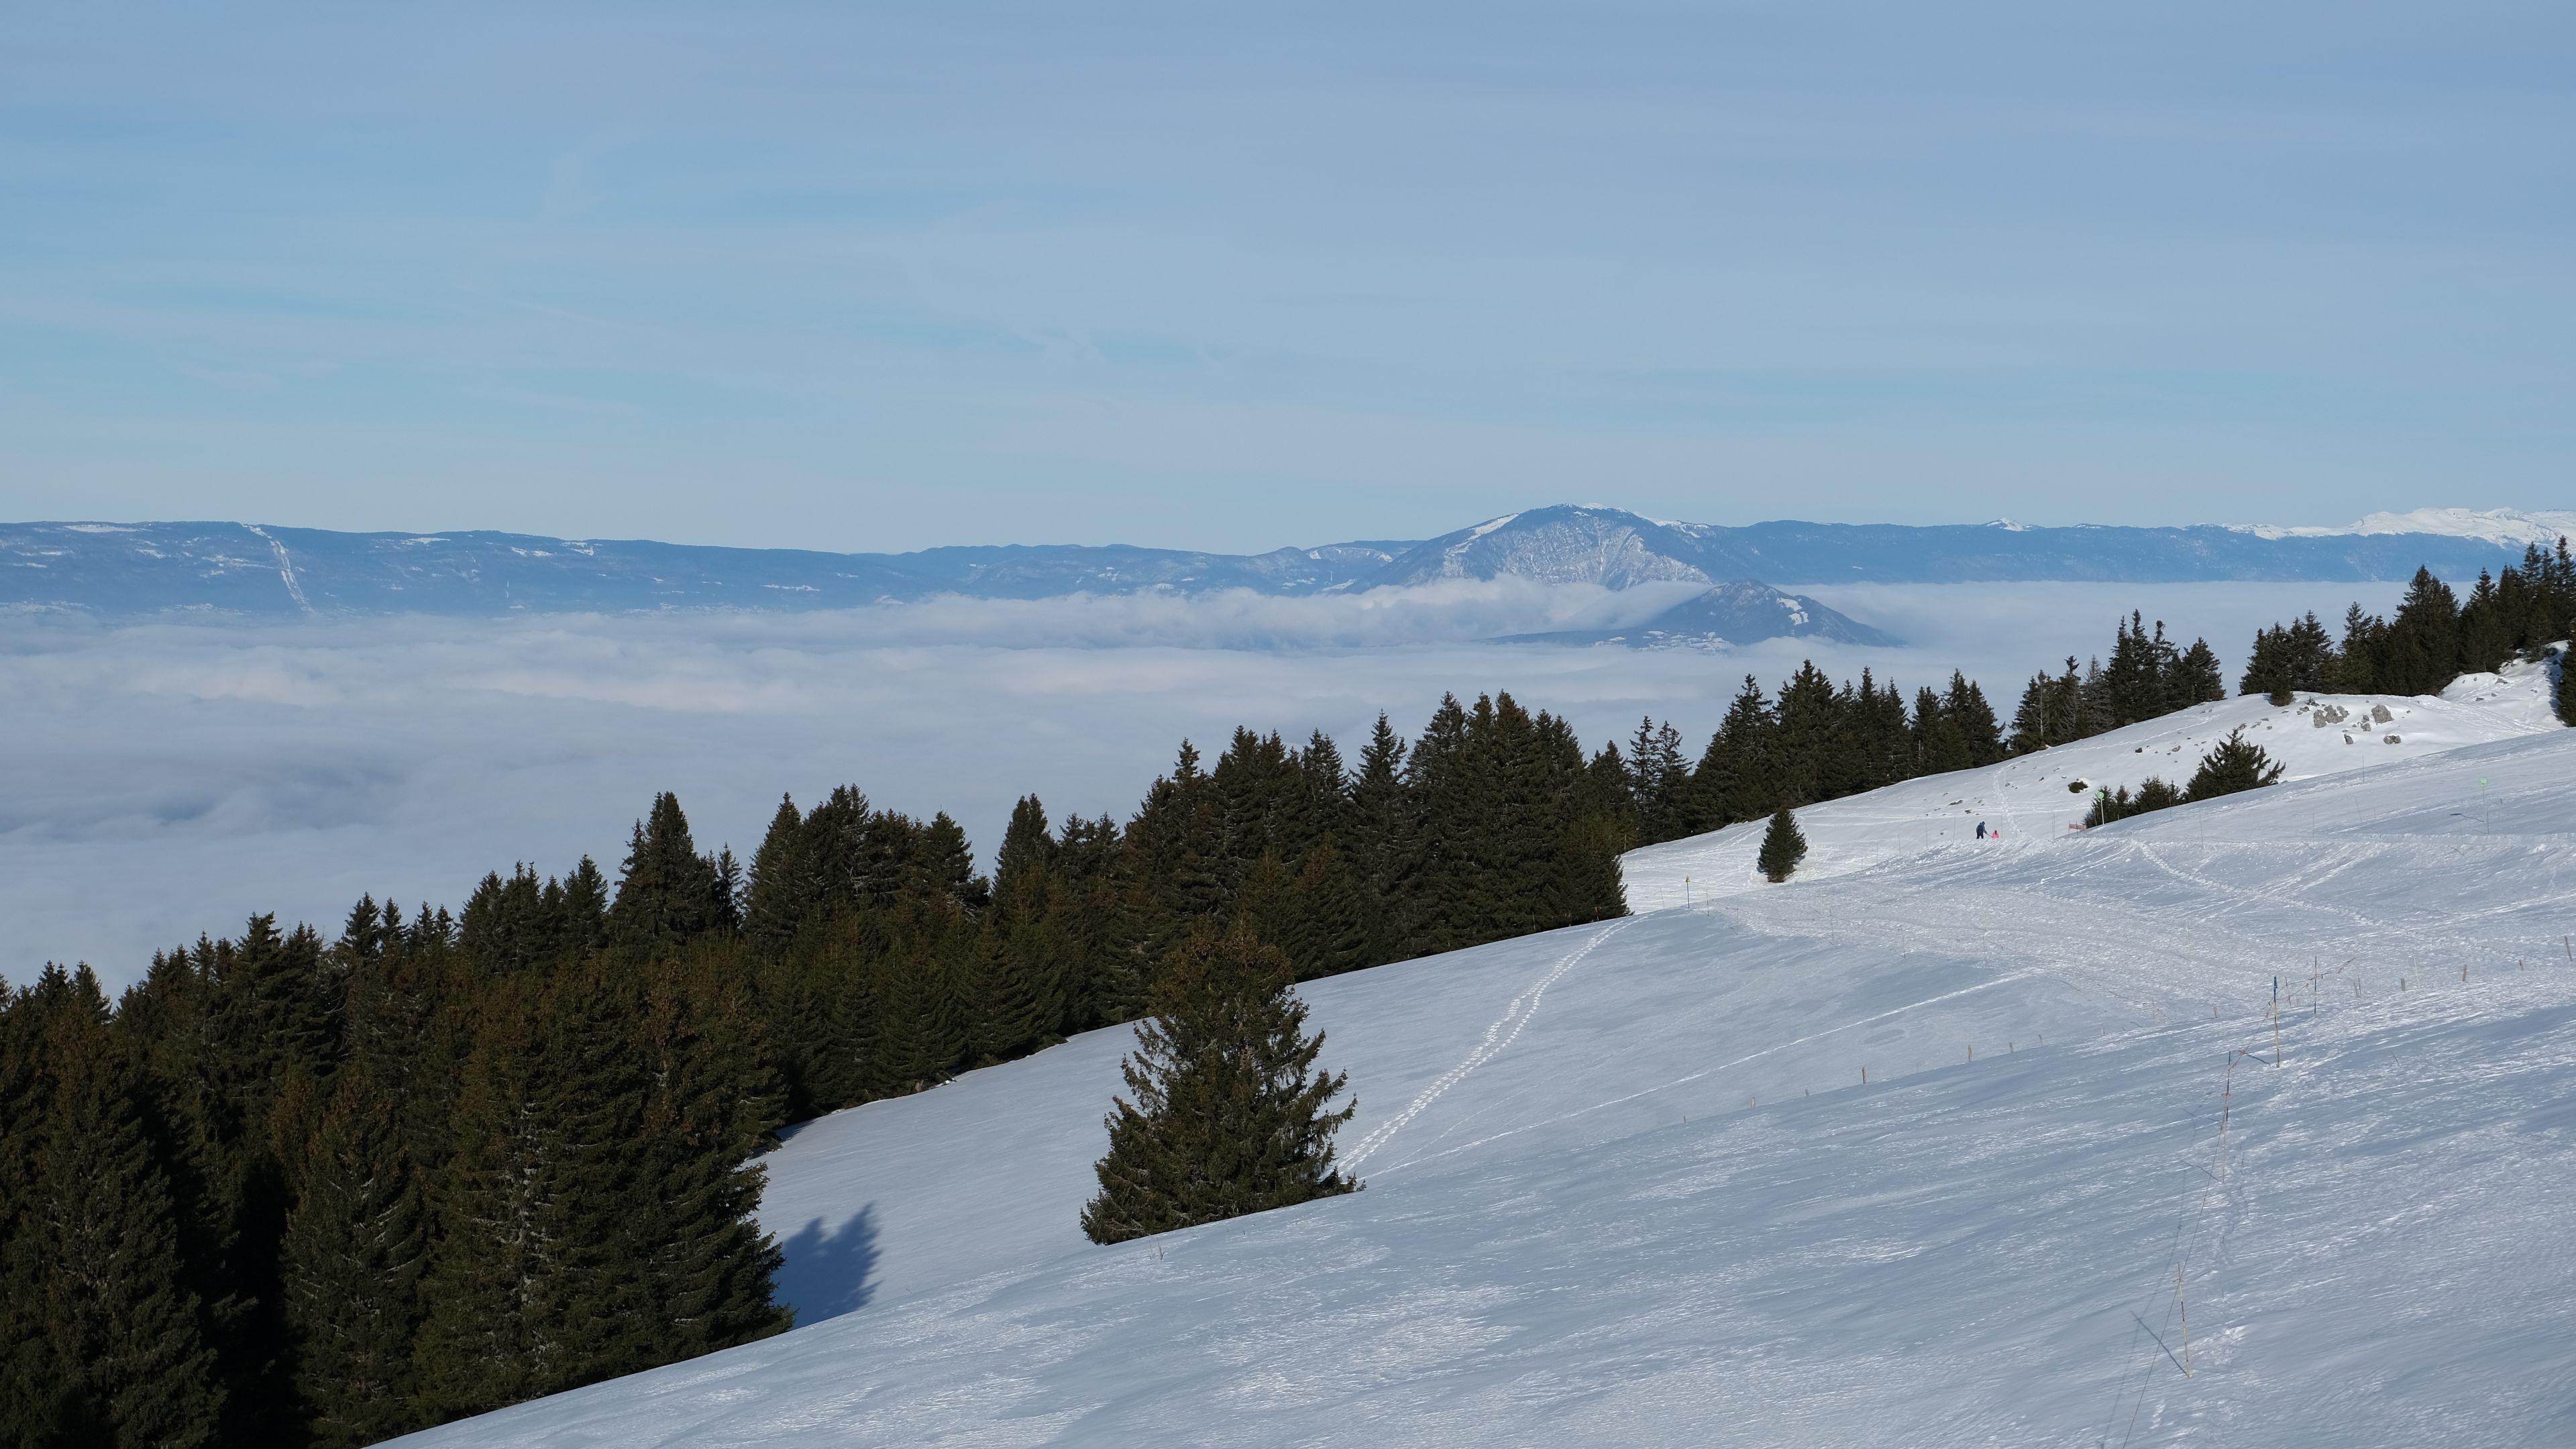 Green spruce trees, Snowy field, Mountain fog, Winter beauty, 3840x2160 4K Desktop